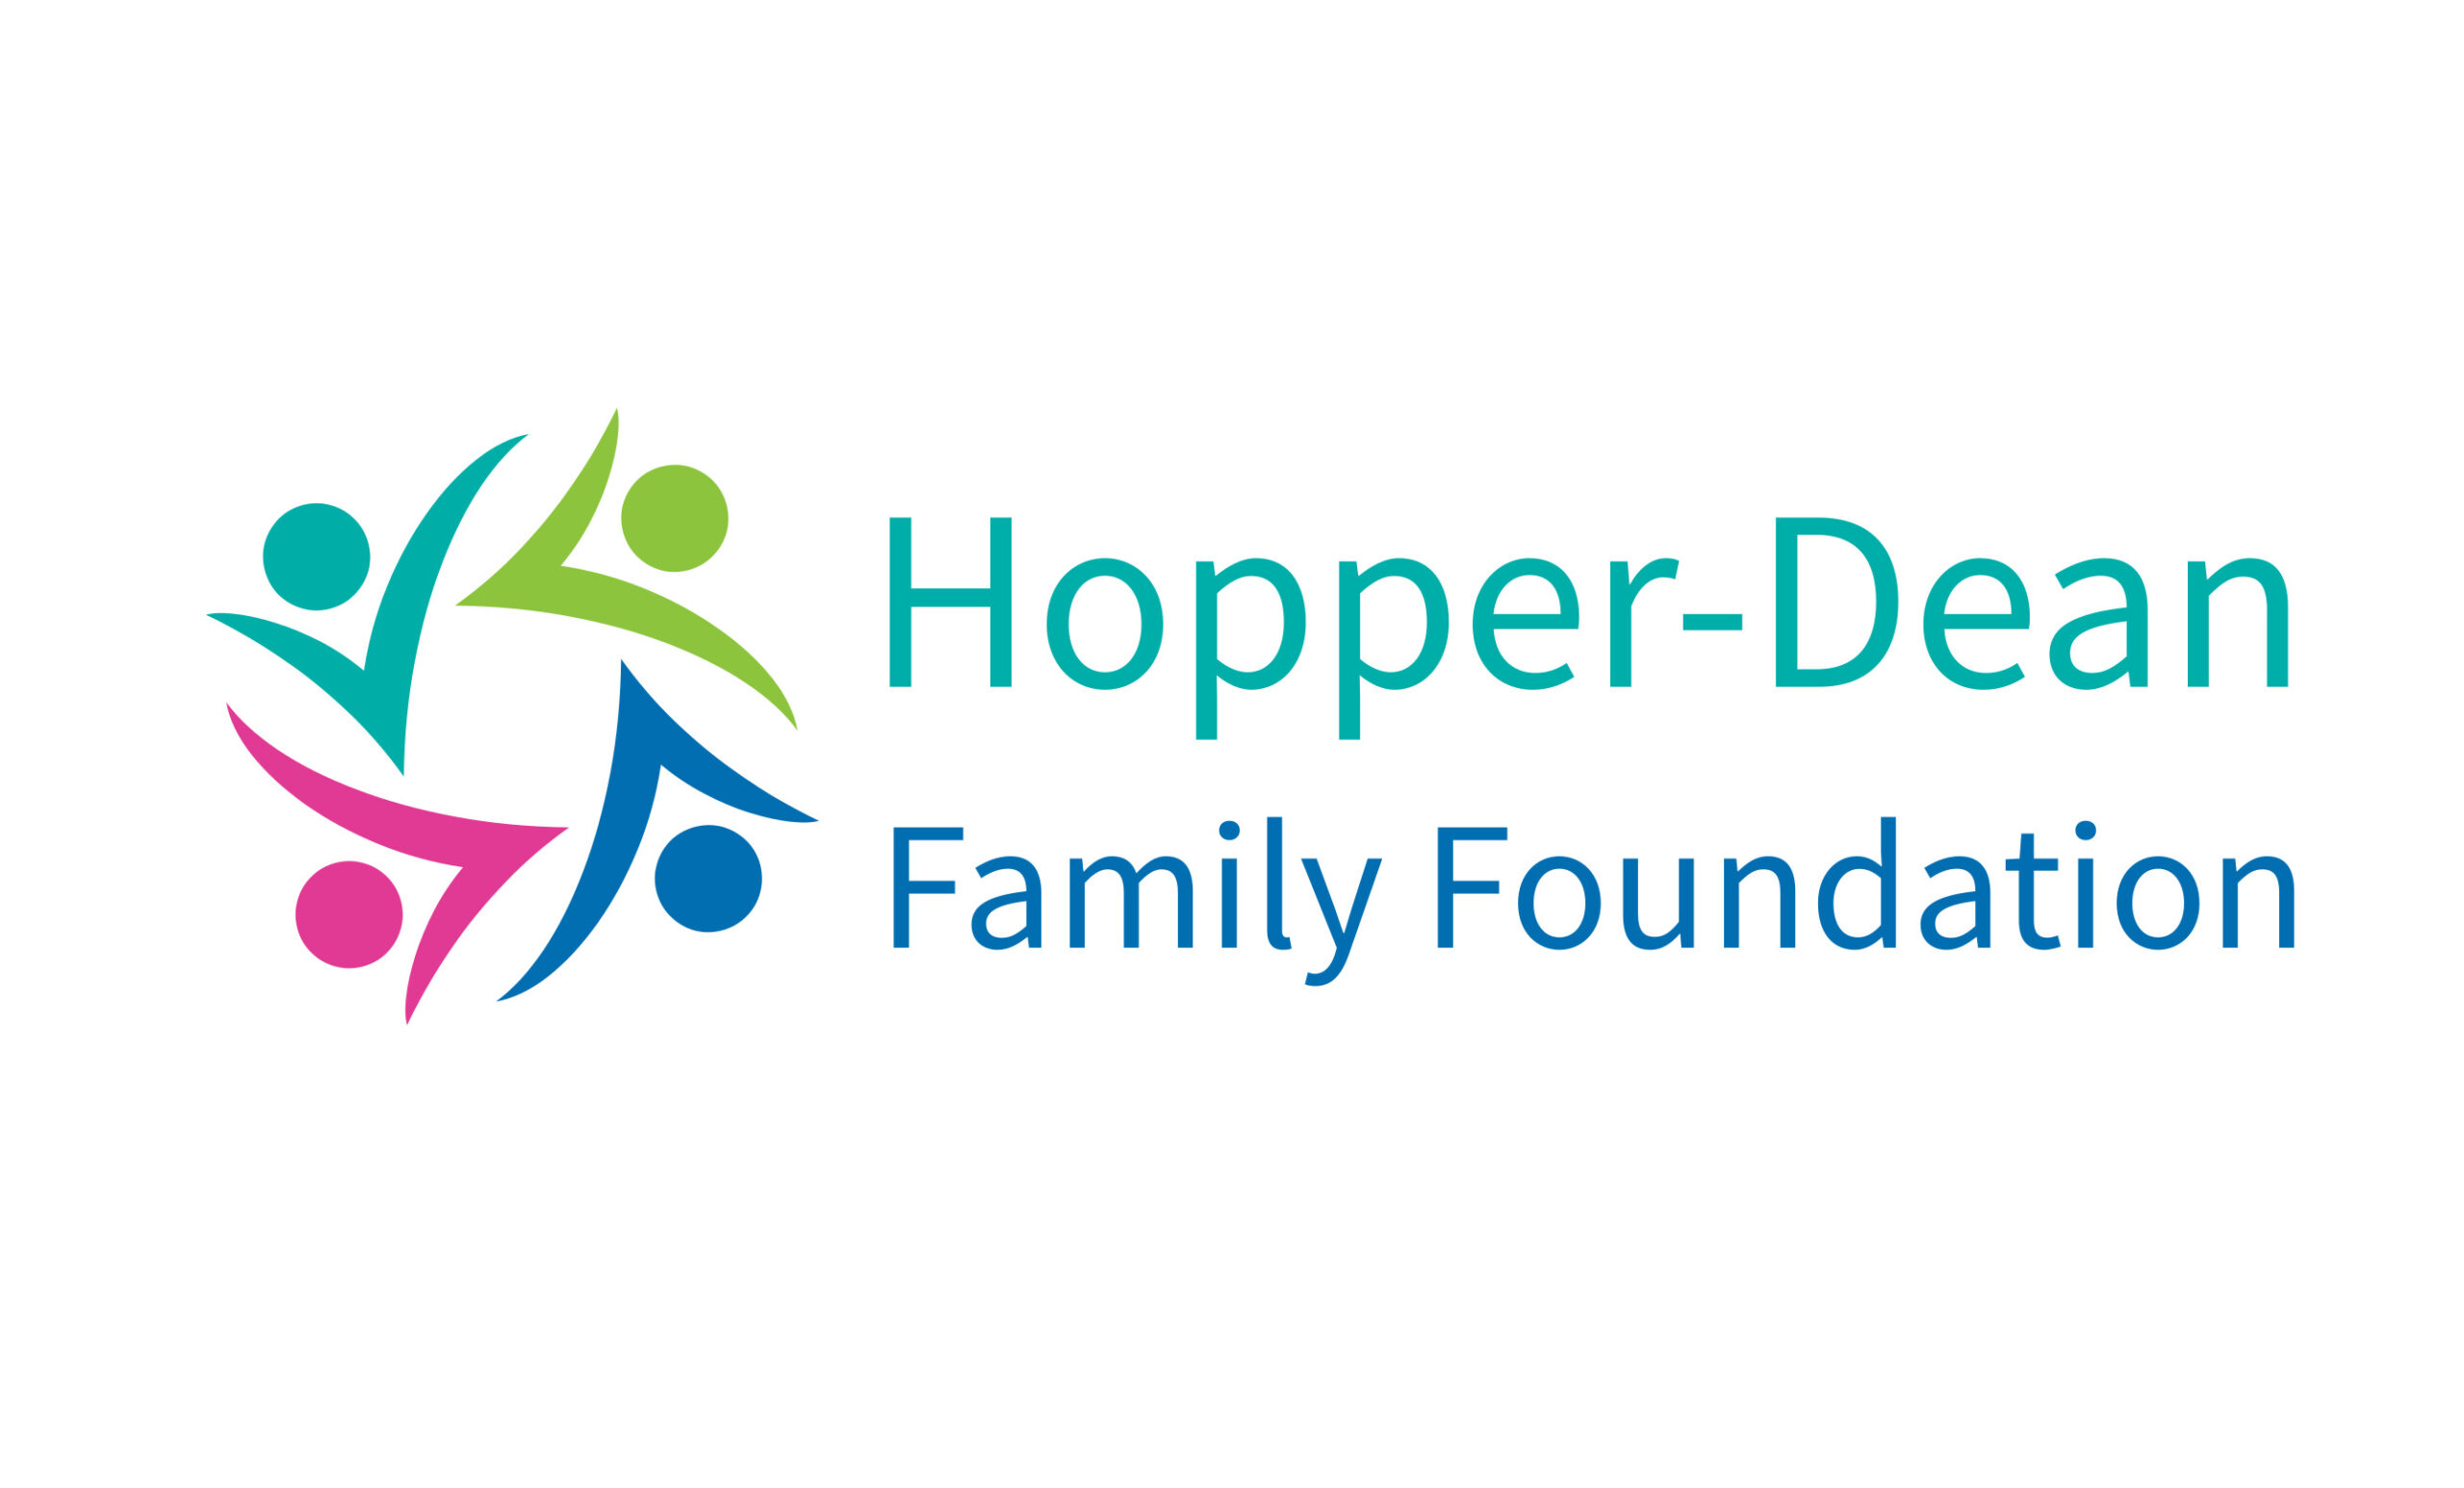 Hopper Dean Family Foundation